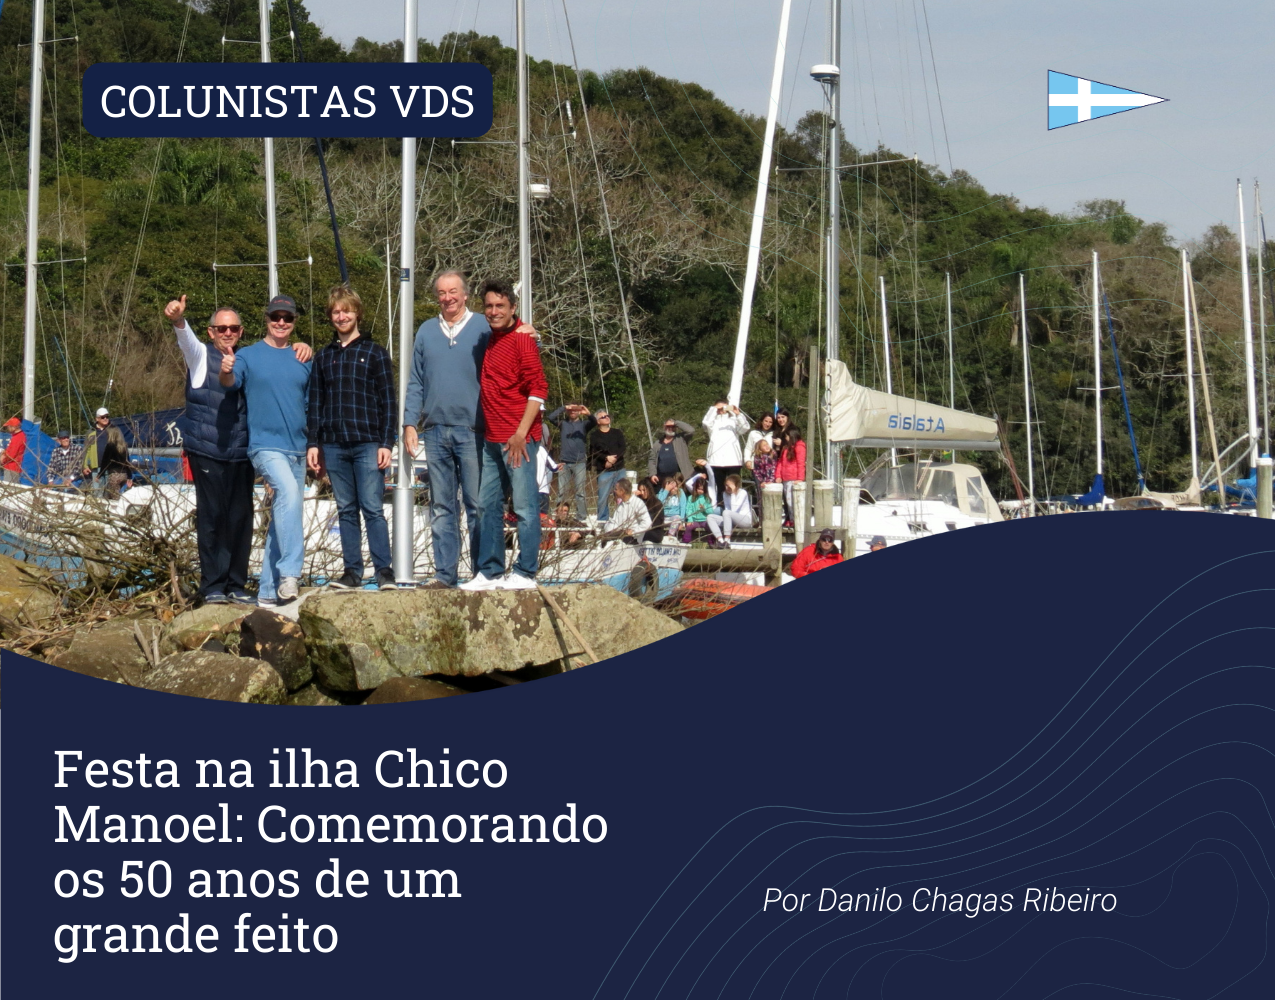 Festa na ilha Chico Manoel: Comemorando os 50 anos de um grande feito